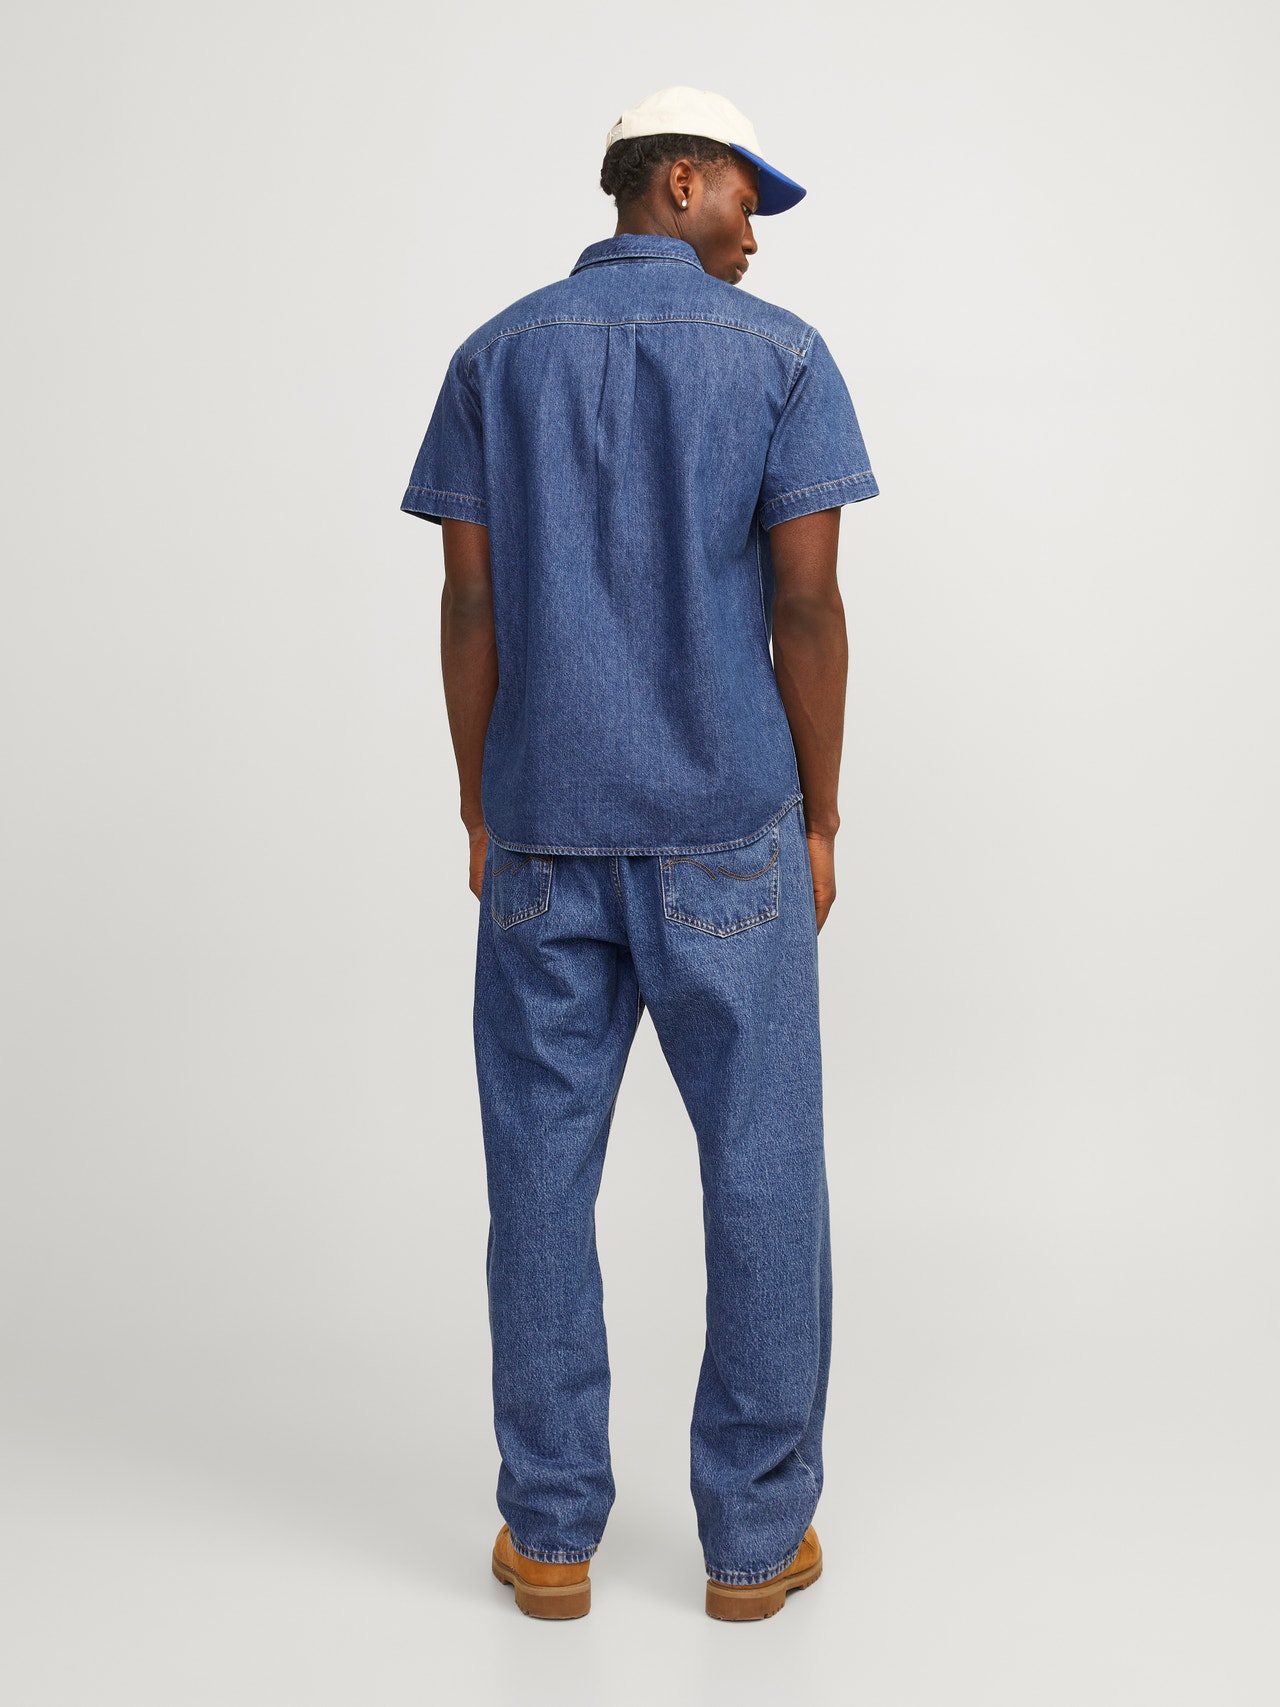 Jack & Jones Comfort Fit Džinsiniai marškiniai -Blue Denim - 12250093